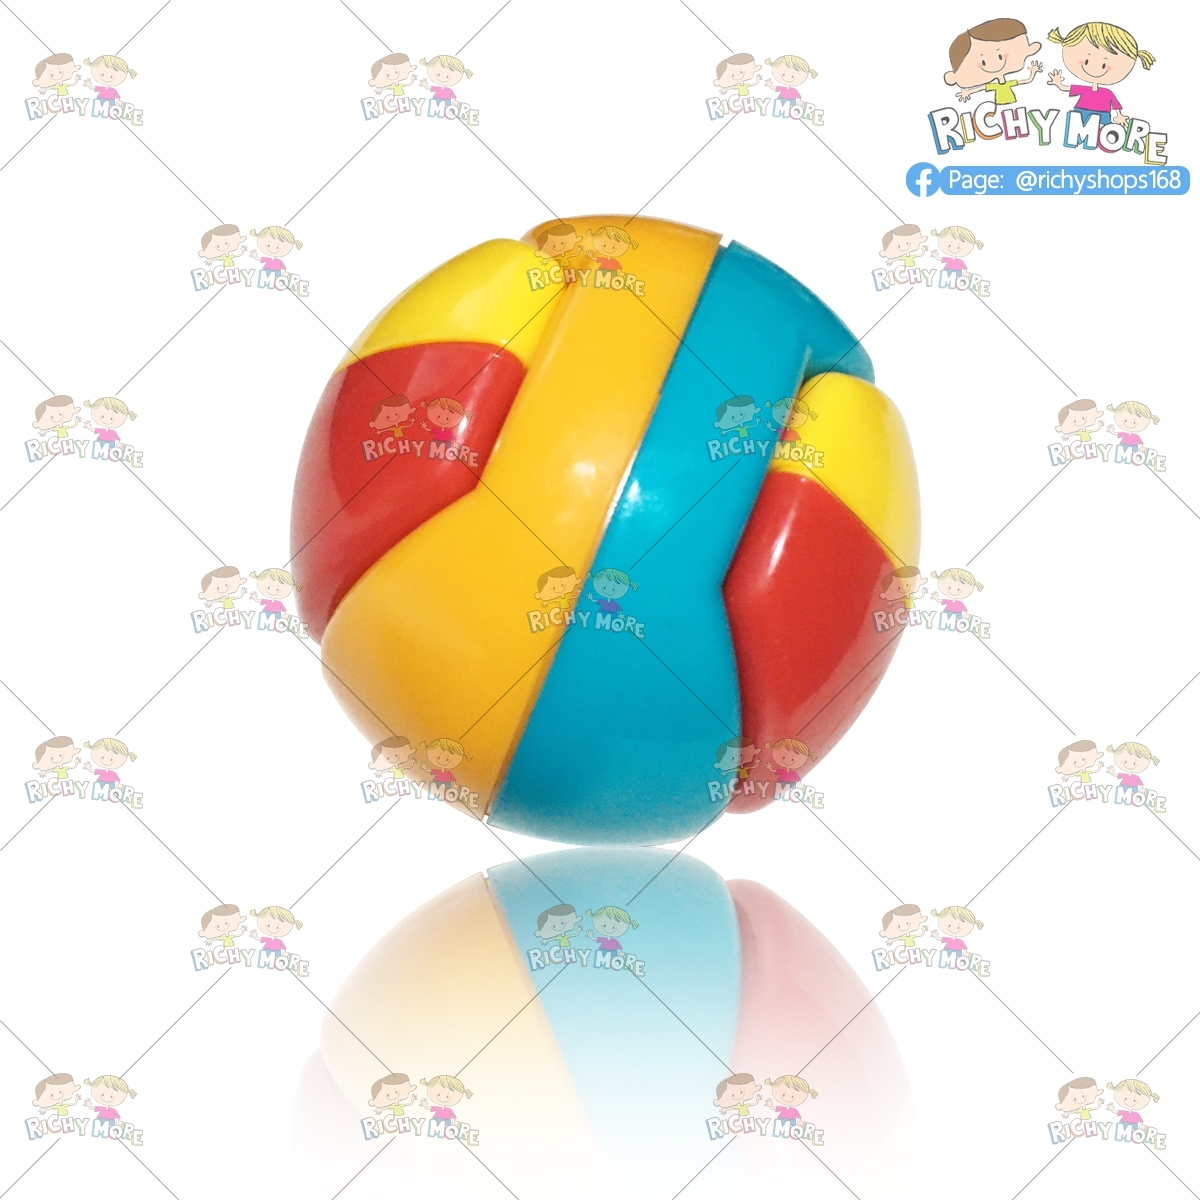 [im]Jipatha168 BaBy soft ball บอลยางนิ่ม มีเสียง บอลนิ่ม เป็นทั้งของเล่นเขย่ามือ และยางกัด